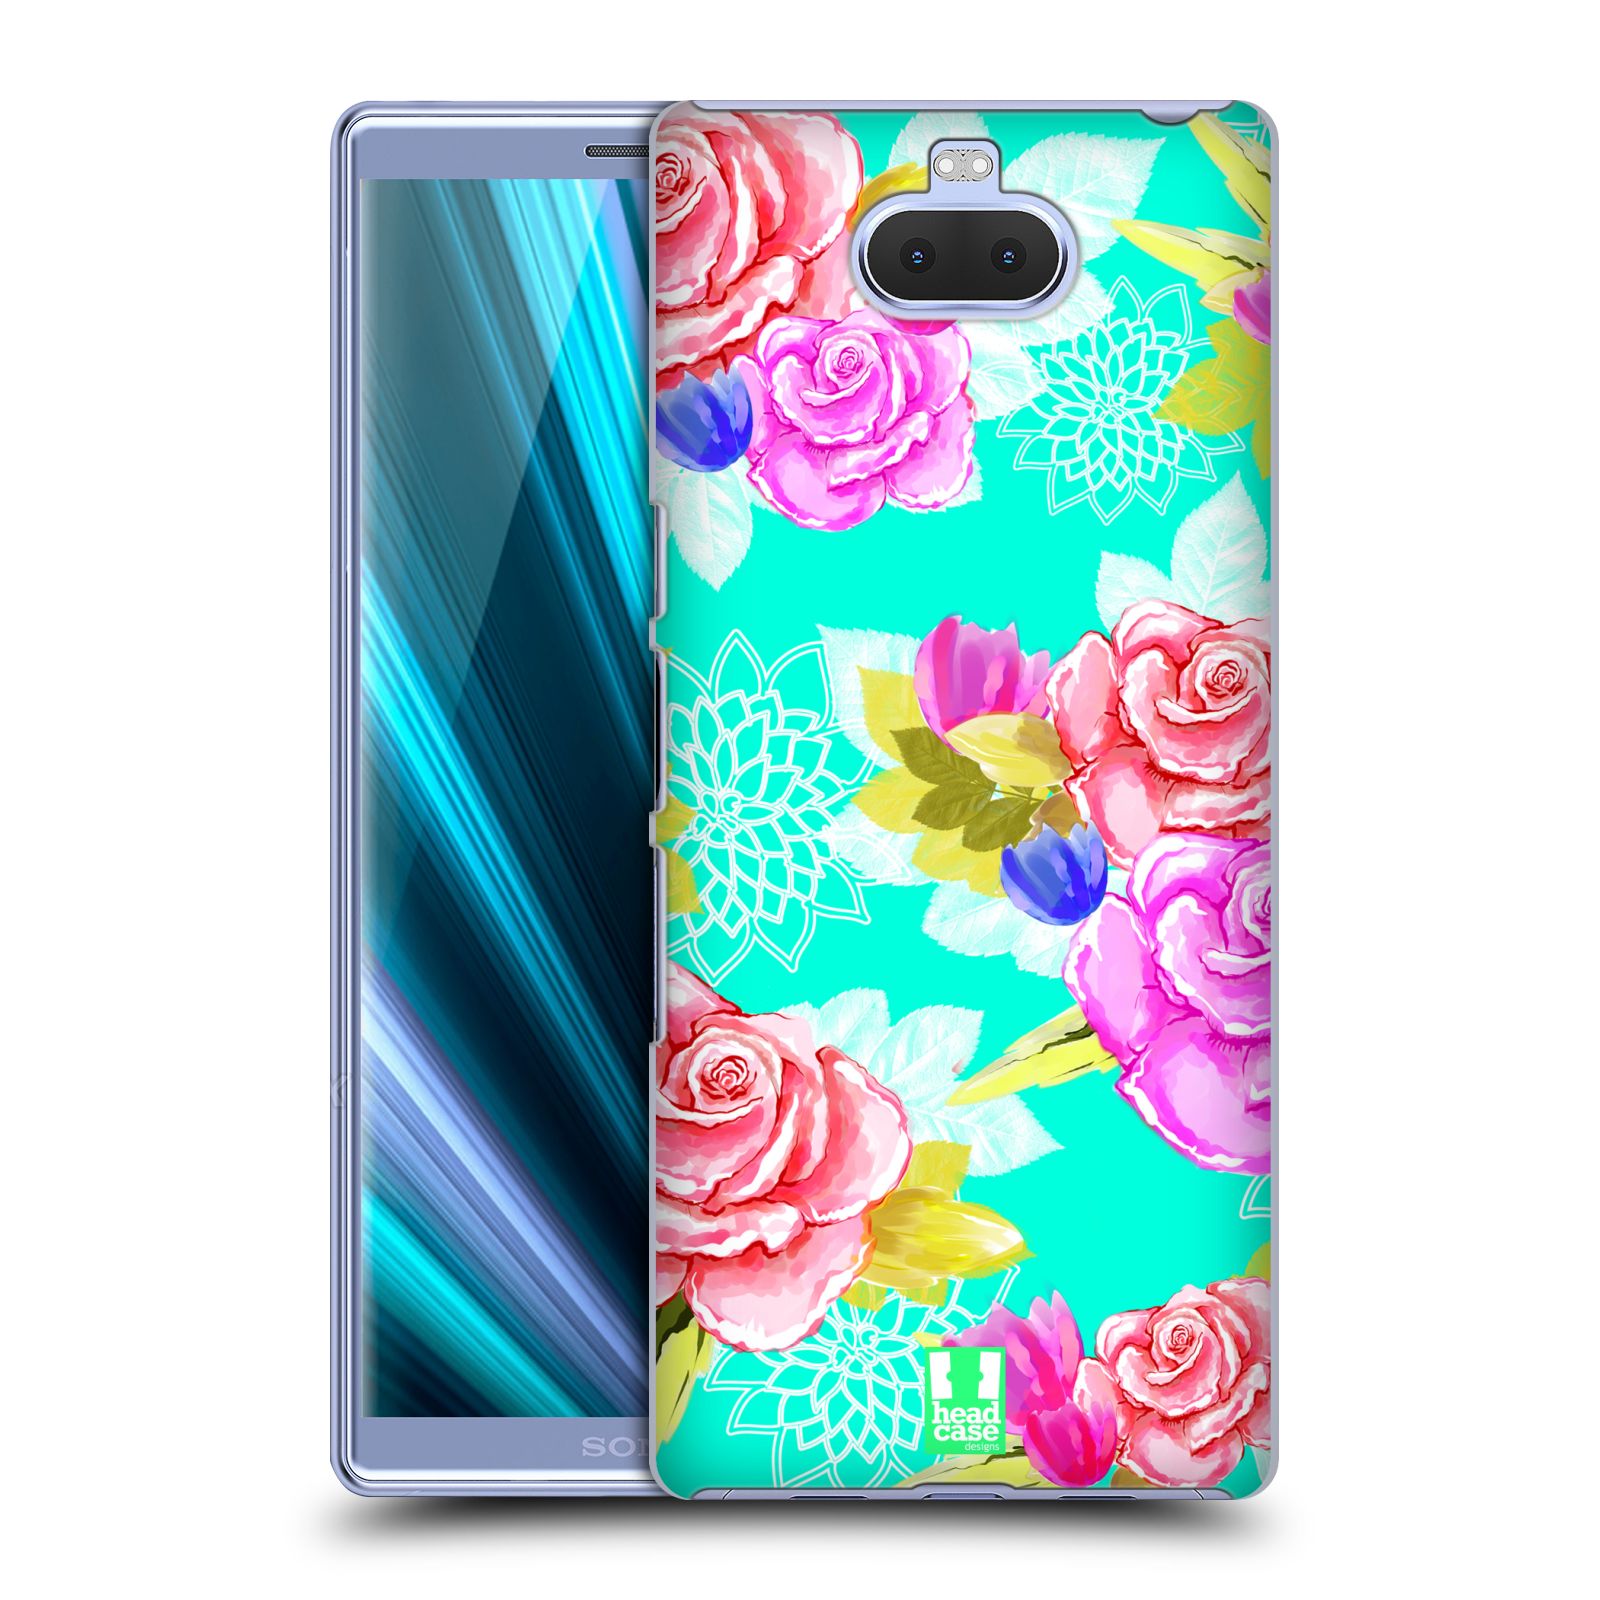 Pouzdro na mobil Sony Xperia 10 - Head Case - vzor Malované květiny barevné AQUA MODRÁ